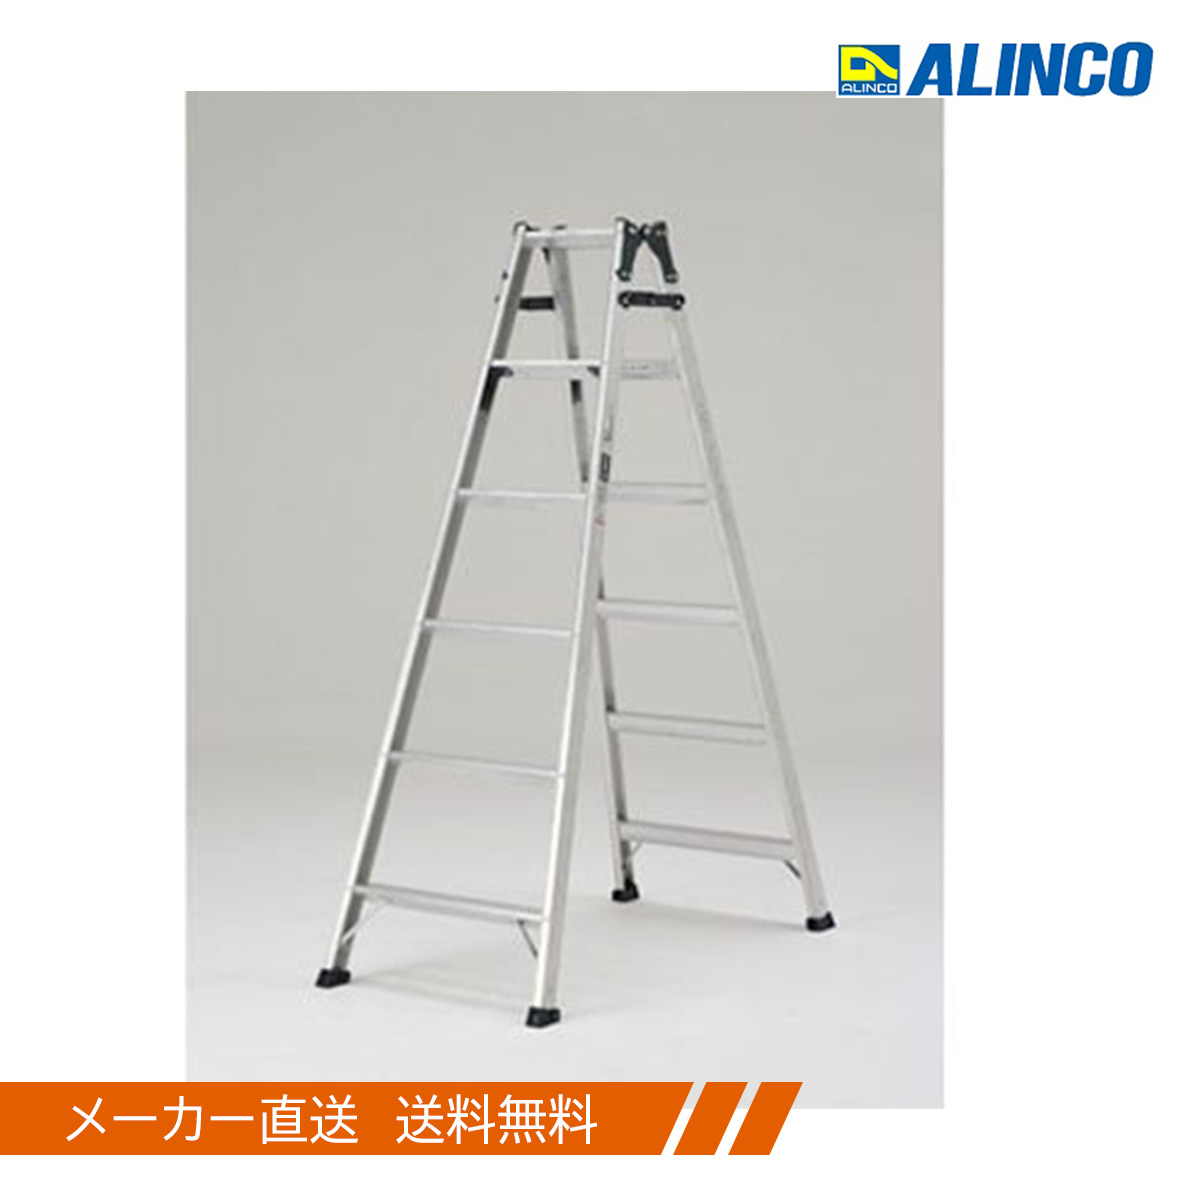 期間限定特価品 アルインコ ALINCO はしご兼用脚立 MXB-210FX